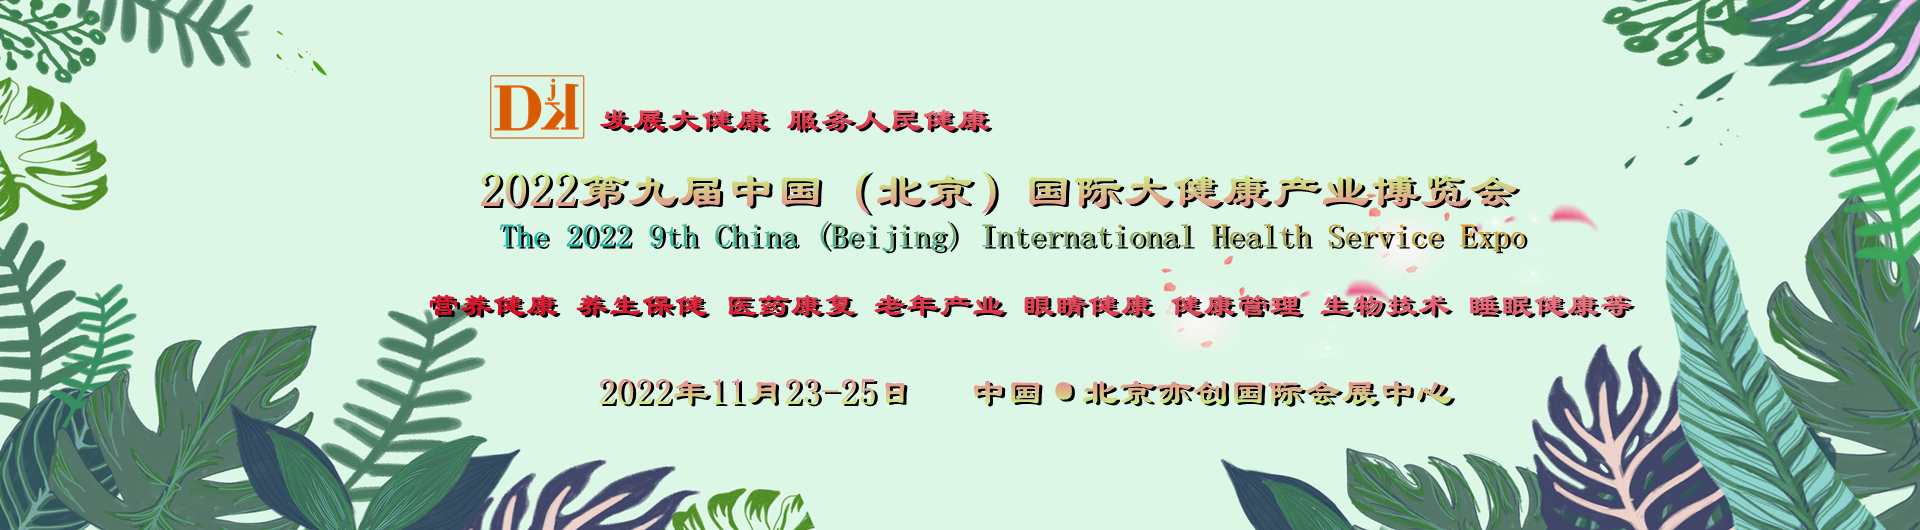 China-DJK北京健博会，快速融合国内外健康产品与服务的平台